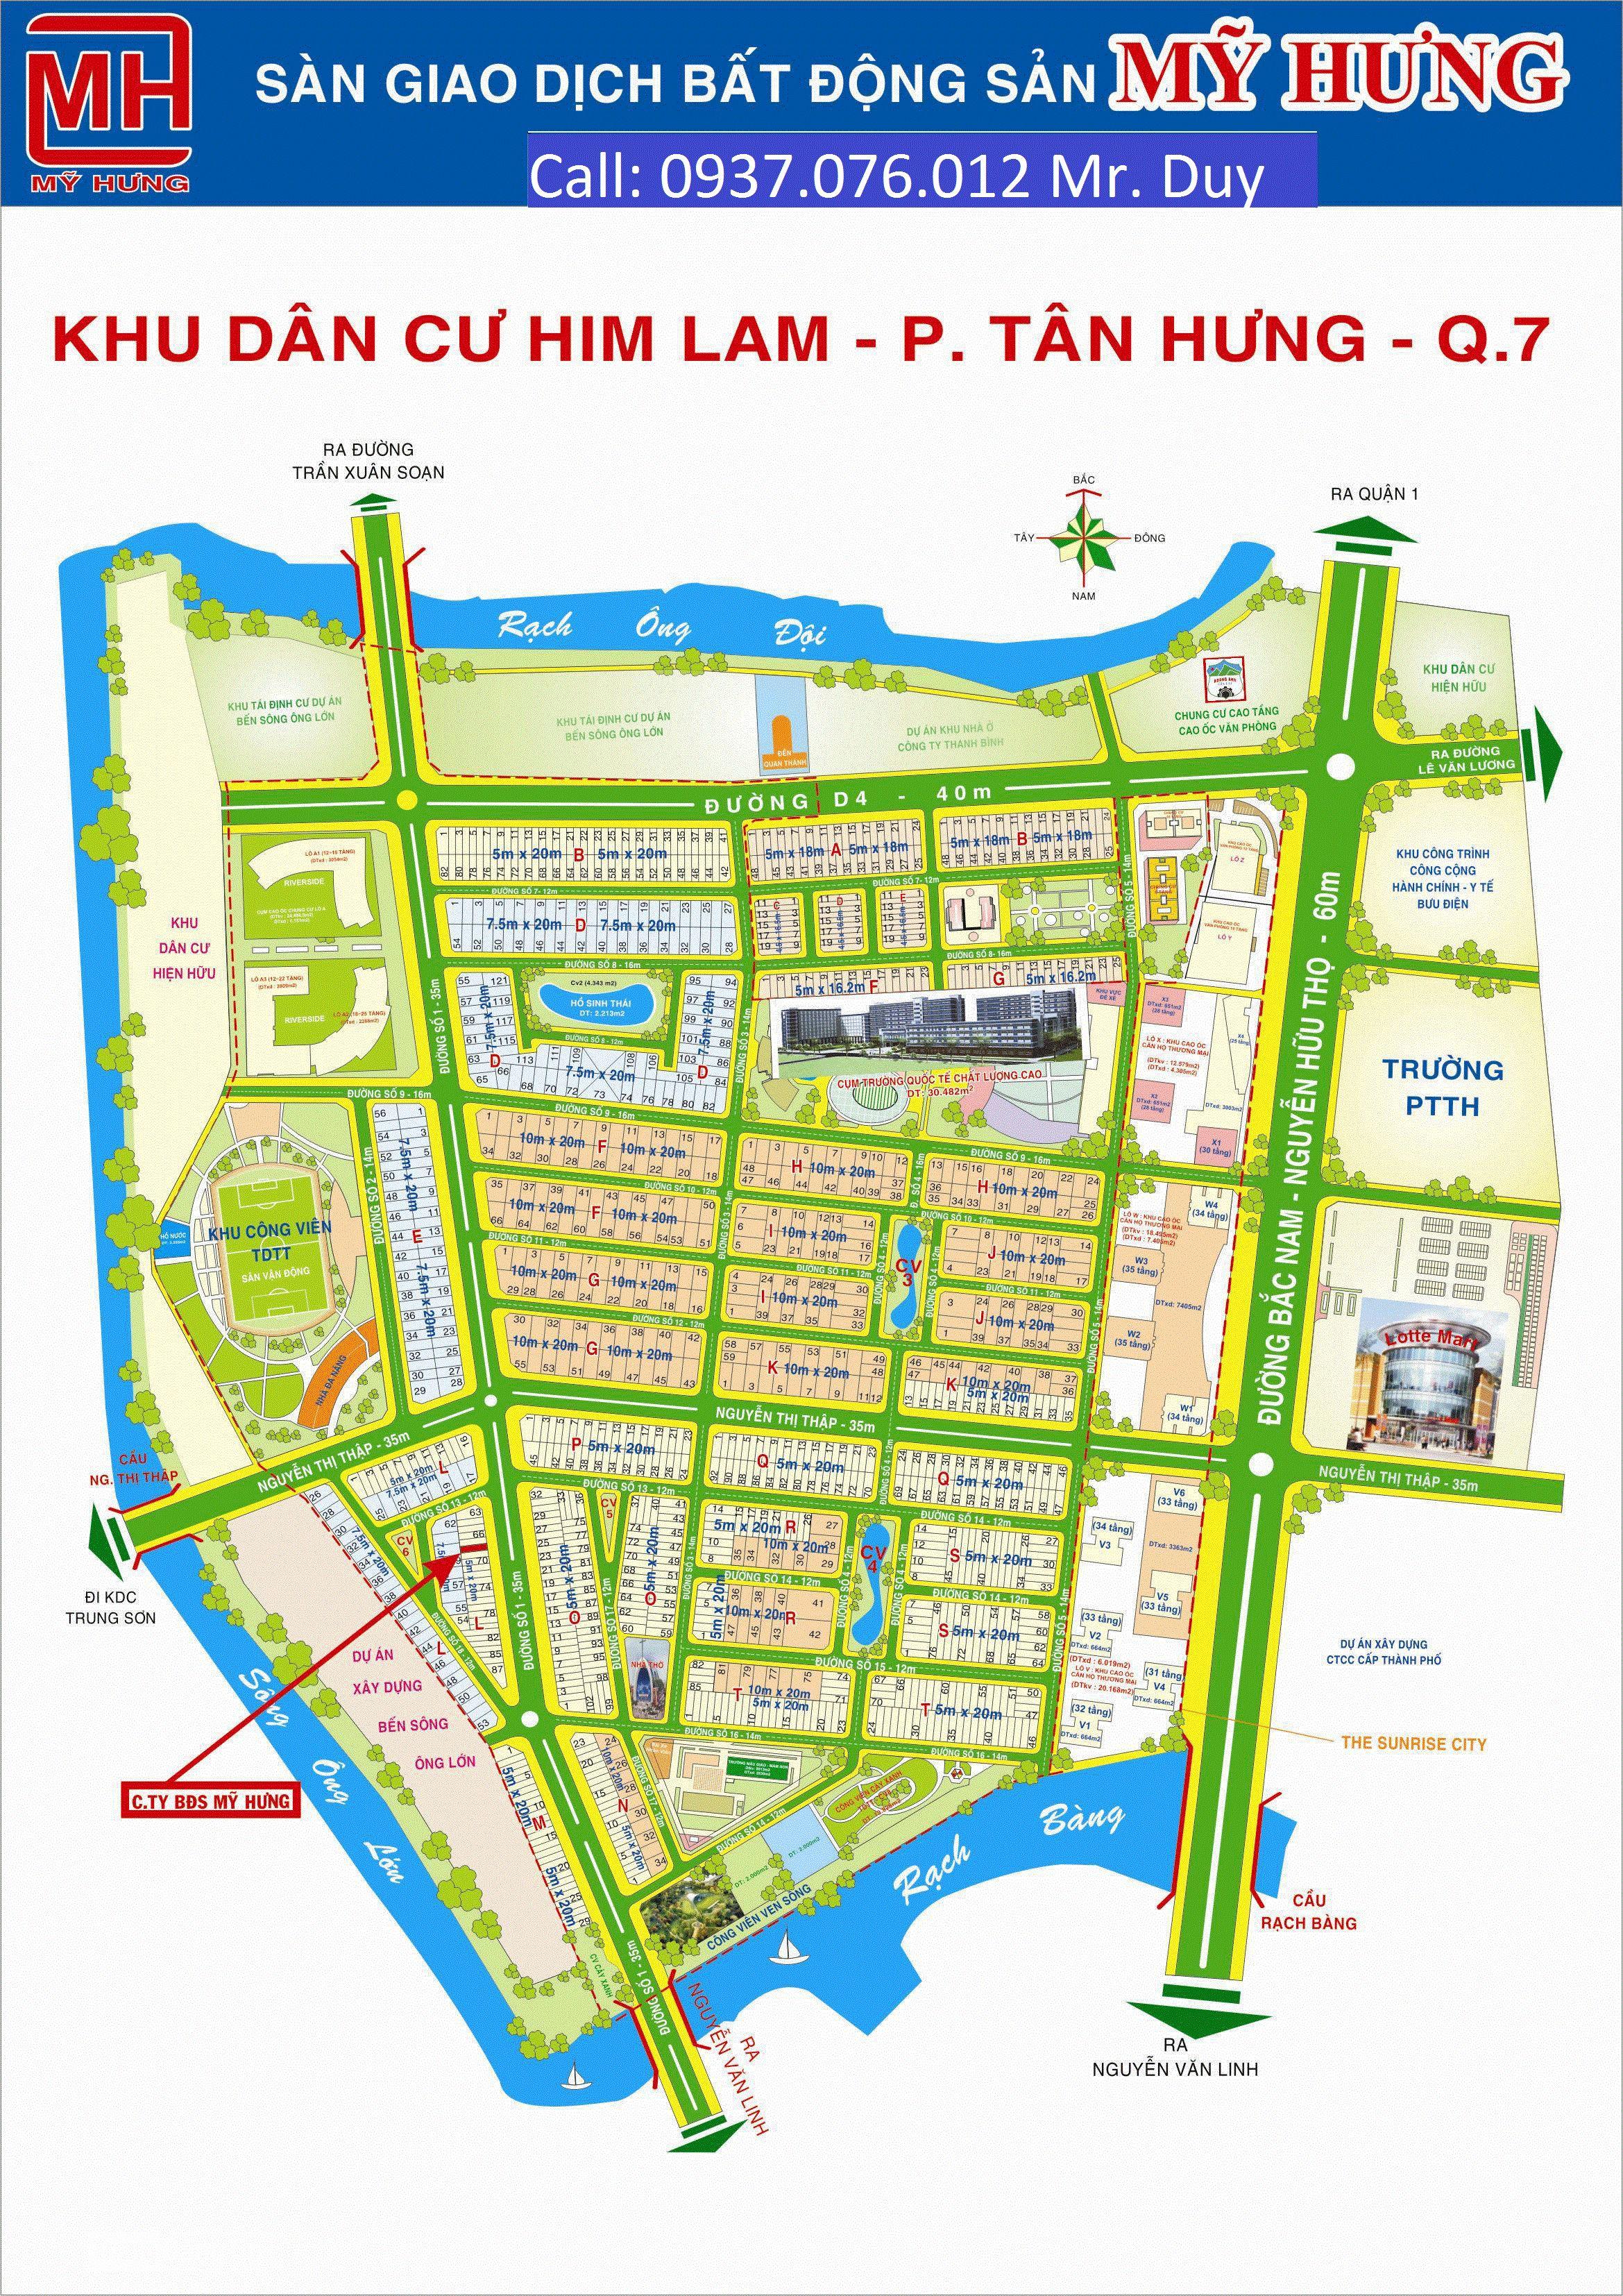 Cần bán gấp lô đất nền KDT Him Lam Kênh Tẻ, P. Tân Hưng, Quận 7 giá rẻ nhất thị trường